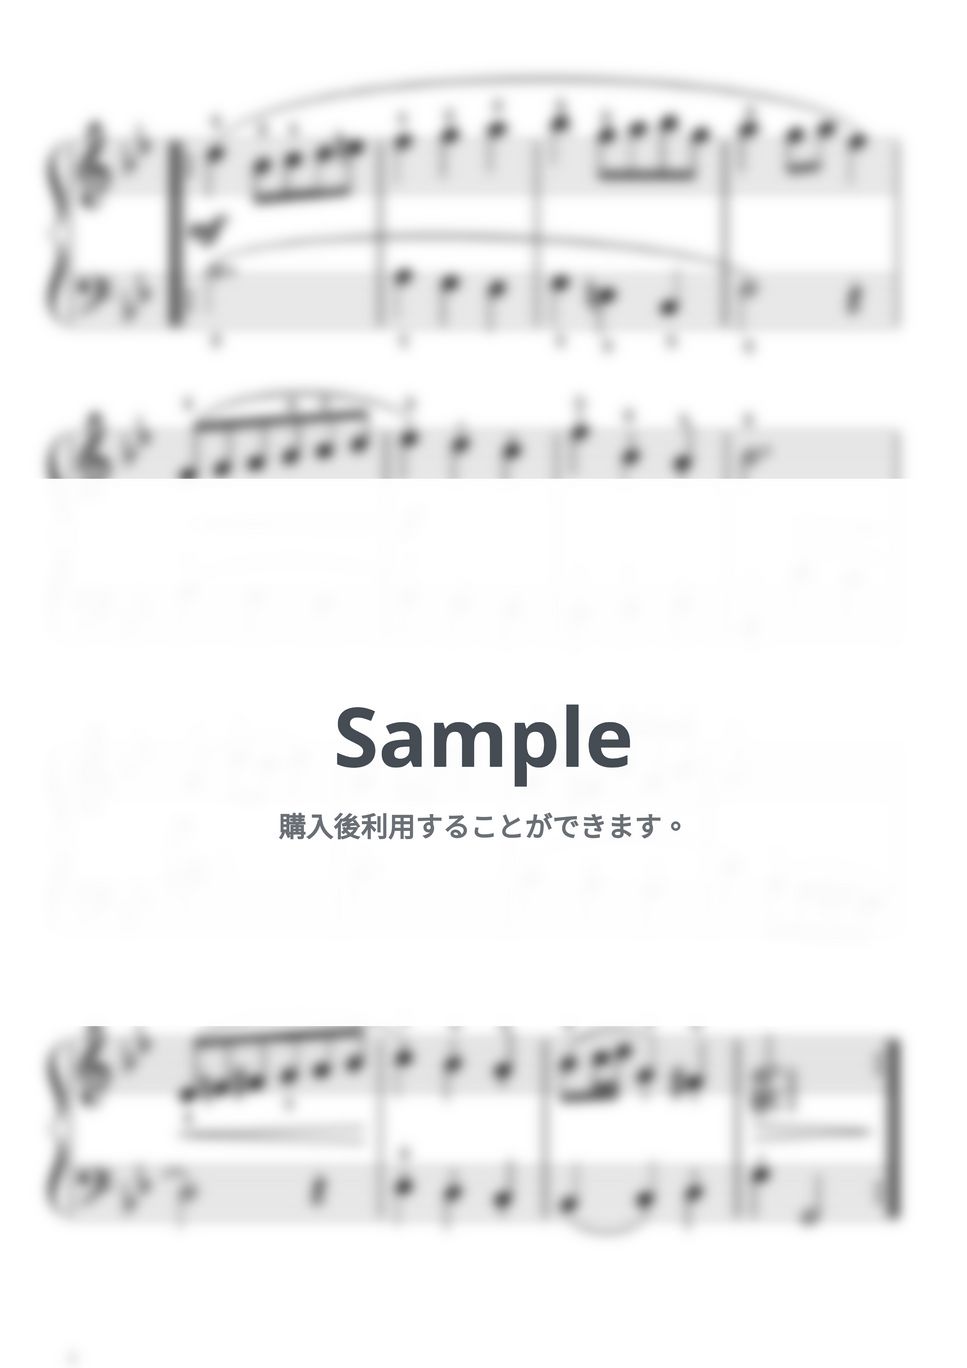 バッハ - メヌエット ト短調（ペッツオールト / バッハ）BWV Anh.114 by ピアノの先生の楽譜集